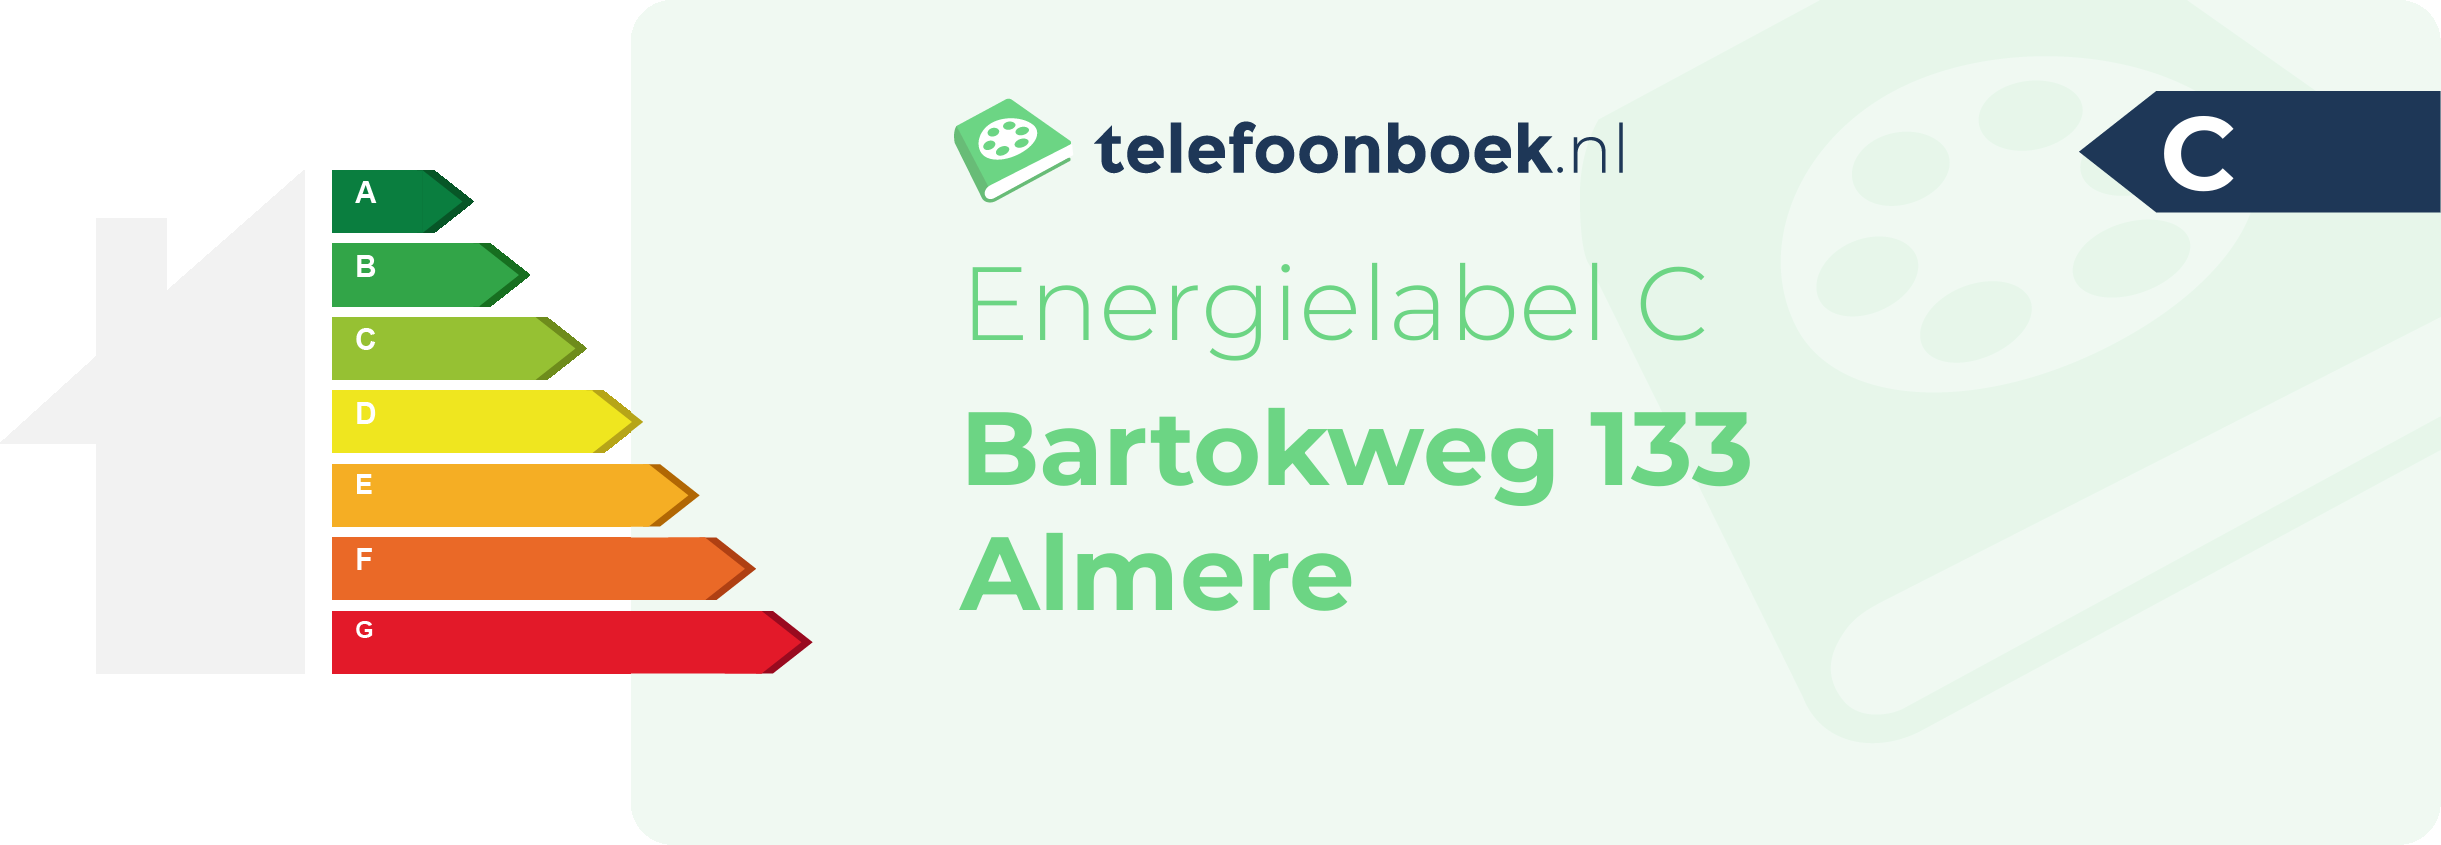 Energielabel Bartokweg 133 Almere